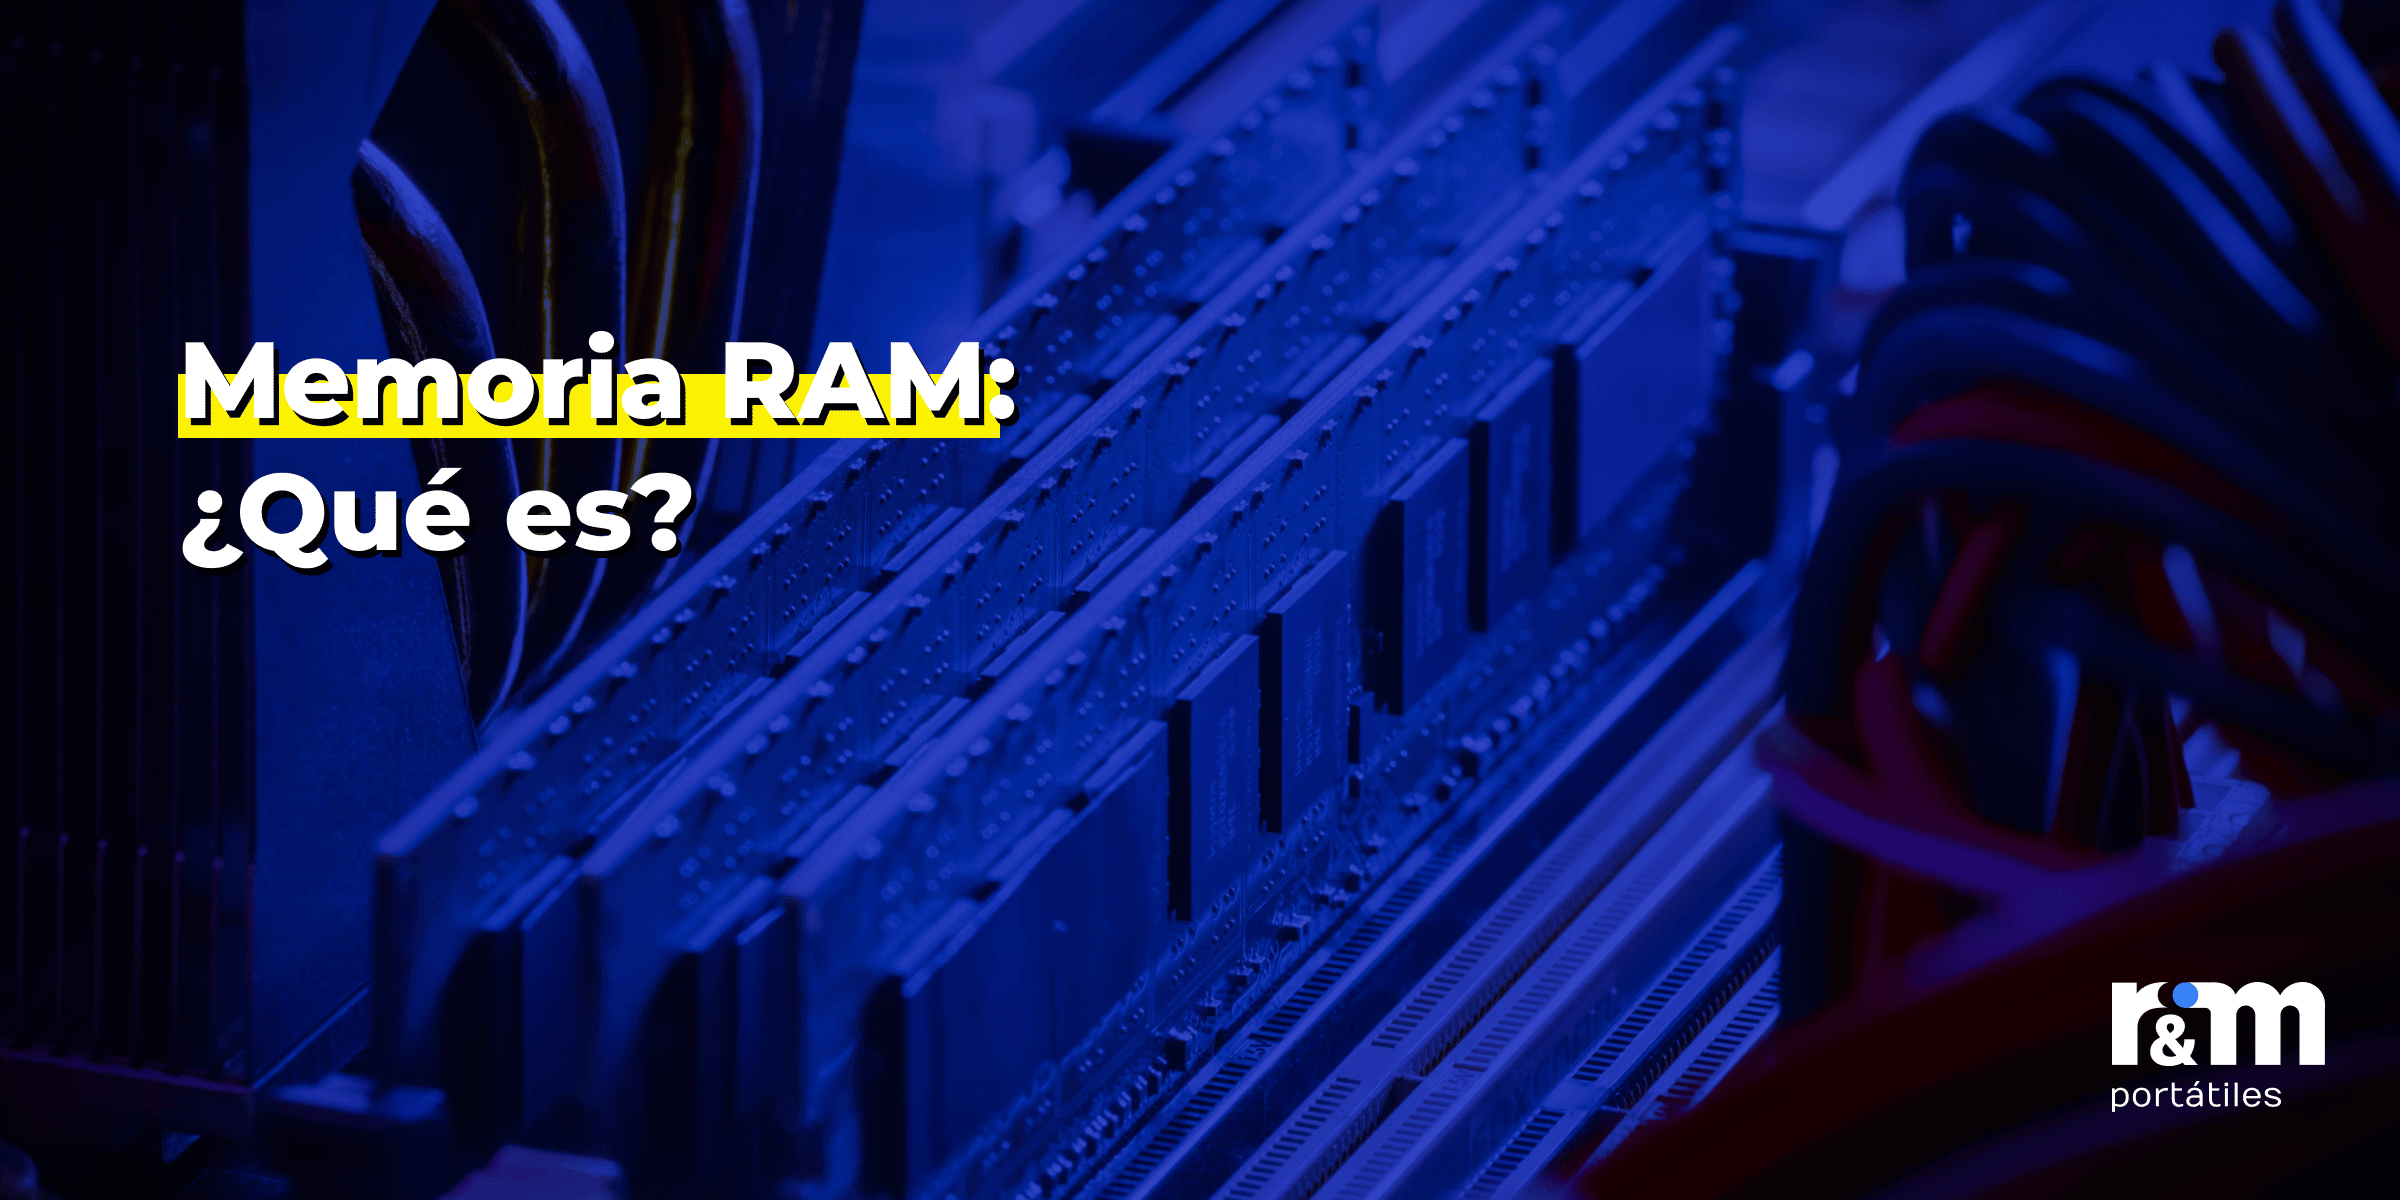 Arcaico recuerdos Descompostura Memoria RAM: ¿Qué es y para qué sirve? - R&M Portátiles